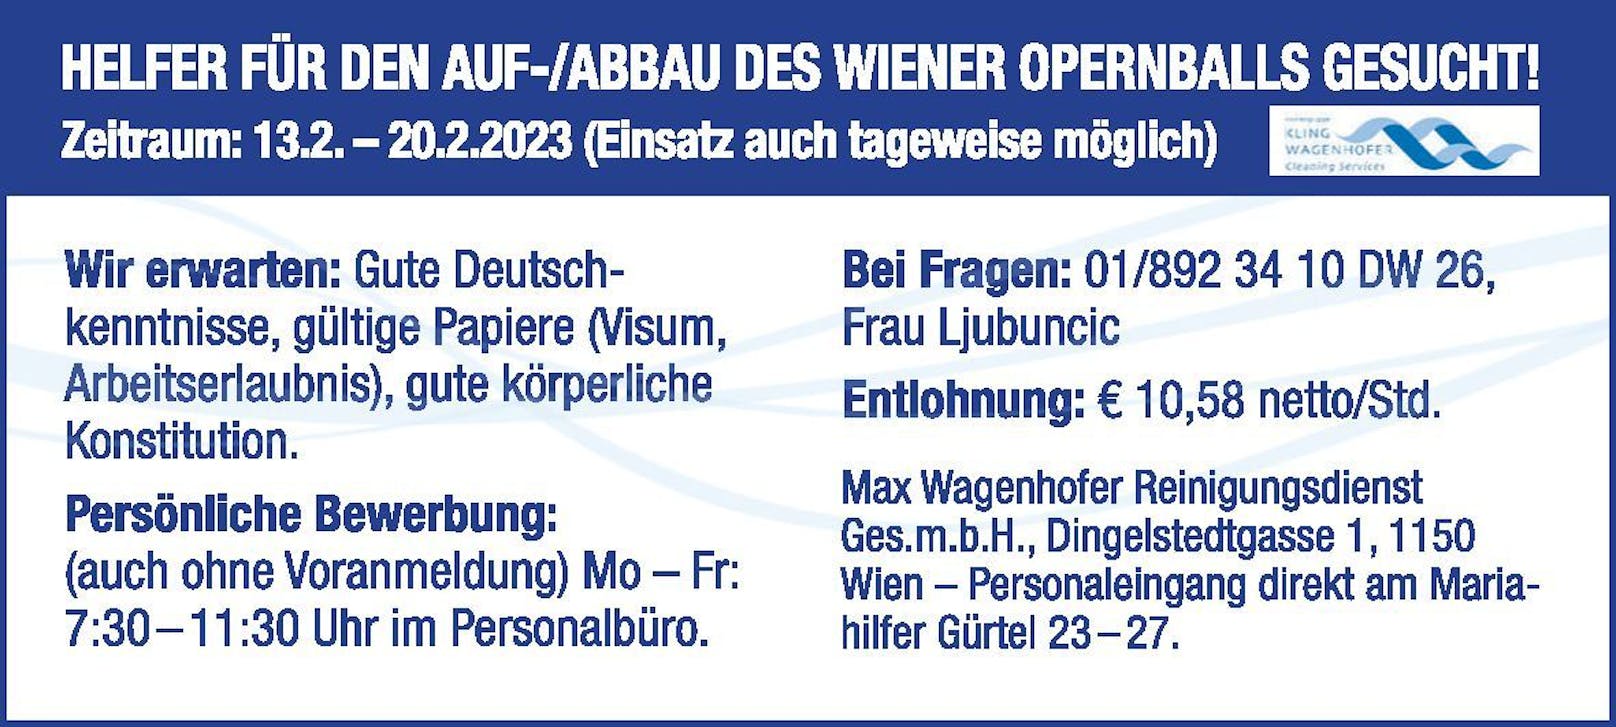 Firma: MAX WAGENHOFER REINIGUNGSDIENST / Job: Helfer Auf-/Abbau Opernball